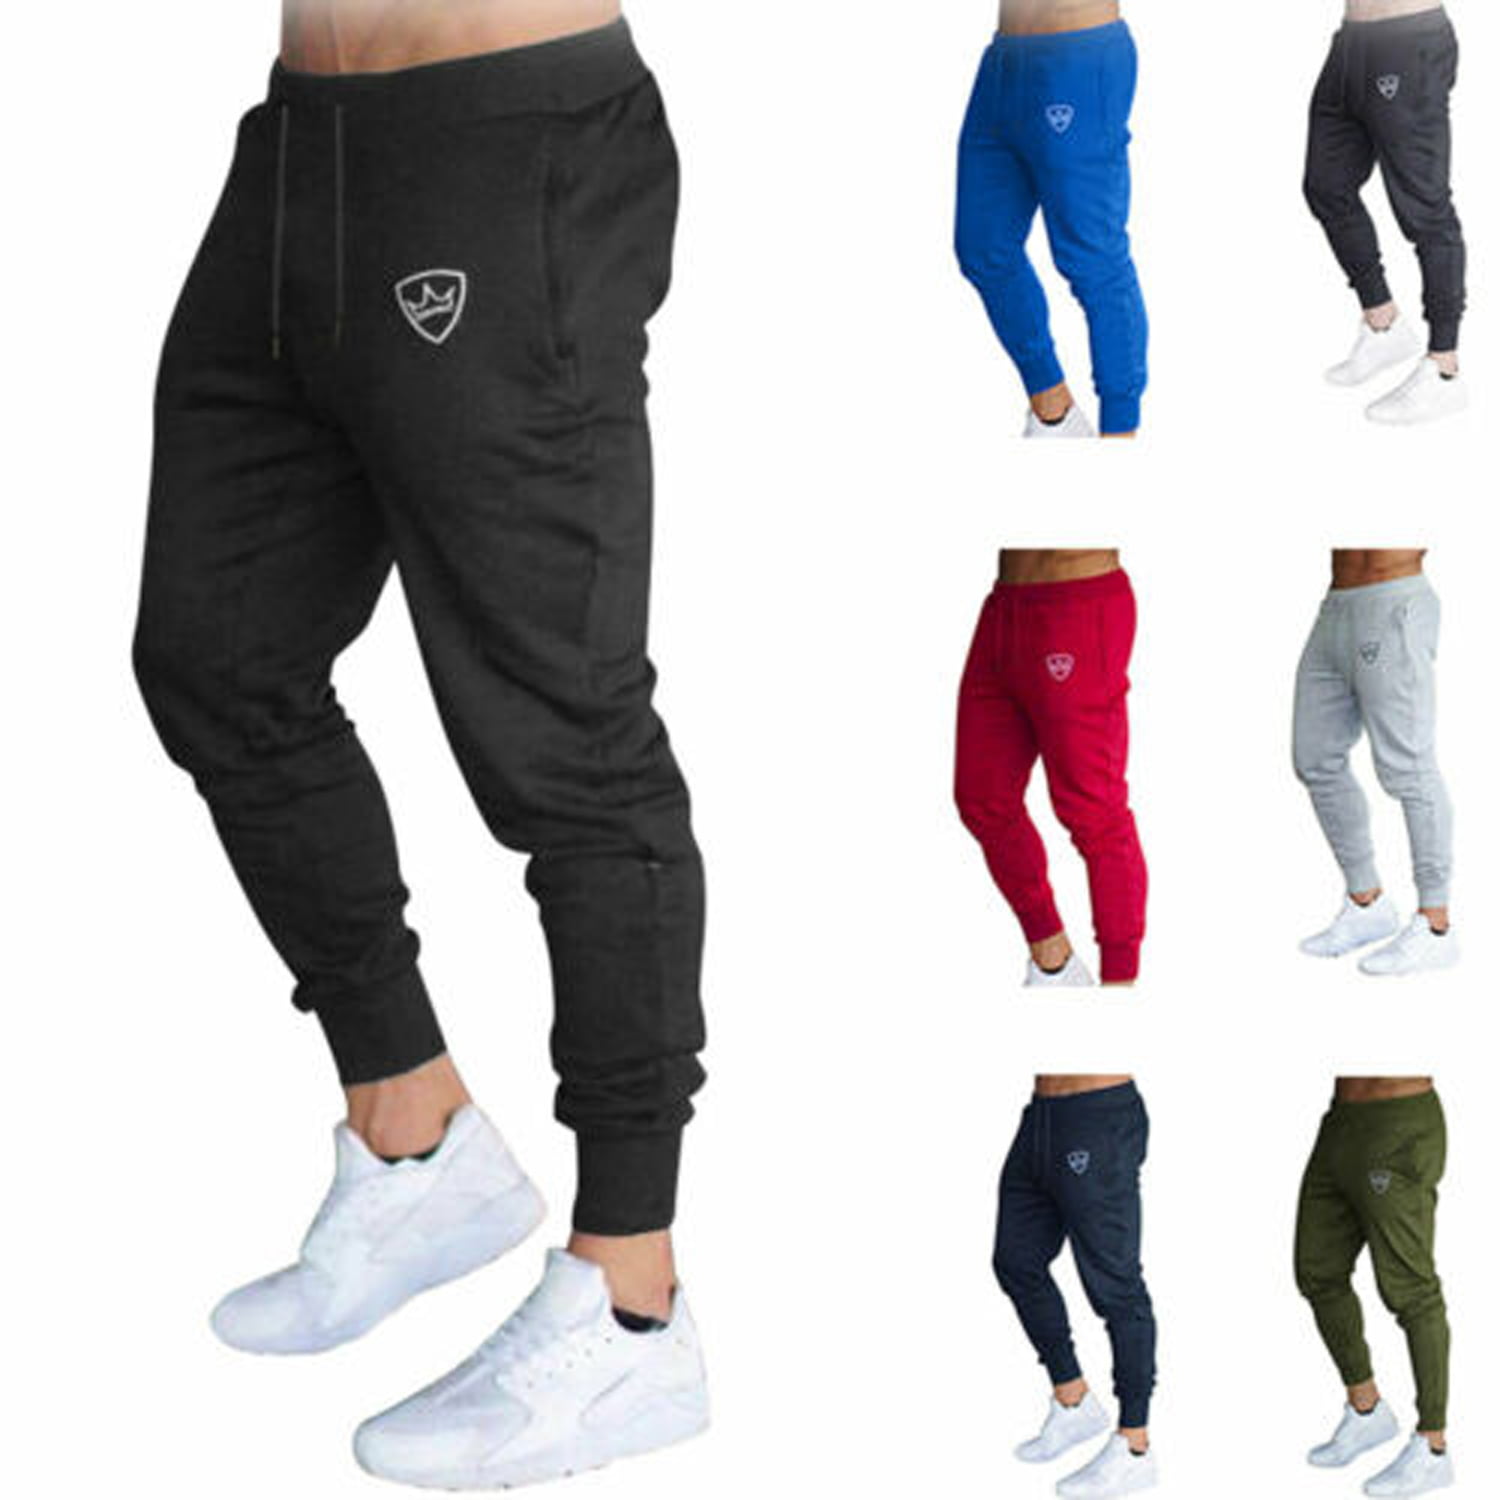 Bagilaanoe - Men's Sport Trousers Slim fit Sweatpants for Gym Running ...